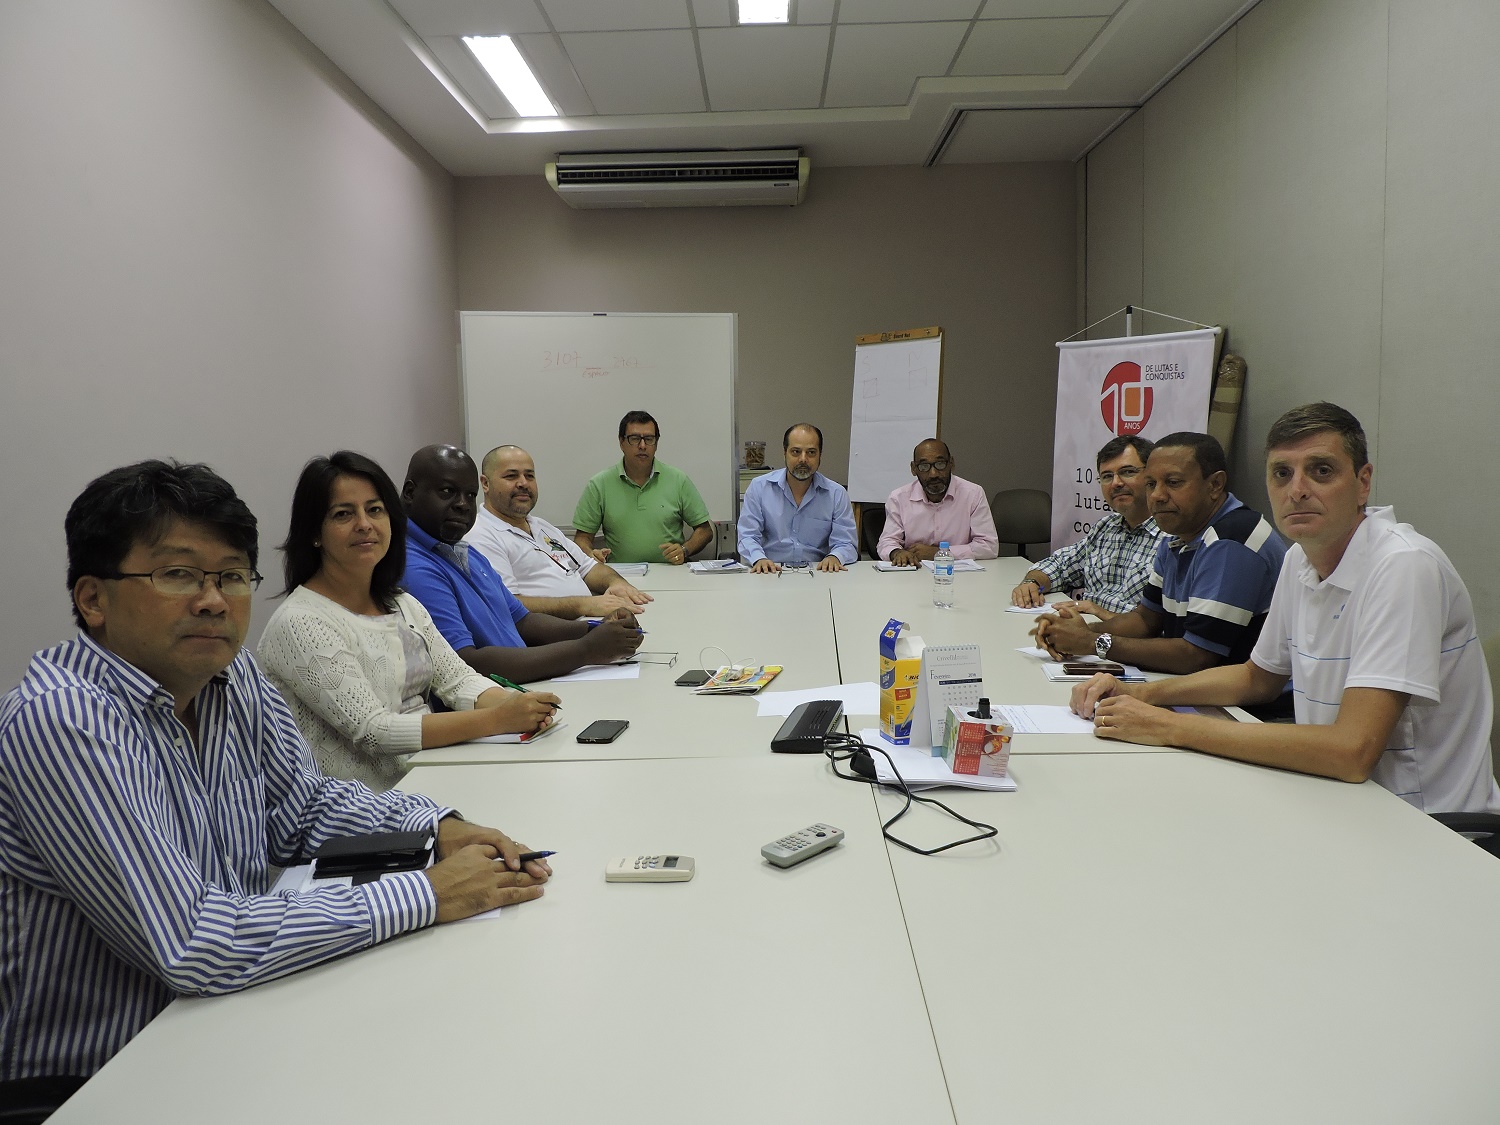 Conselheiros da Fundação Itaú Unibanco discutem pautas e estratégias de ação para 2016